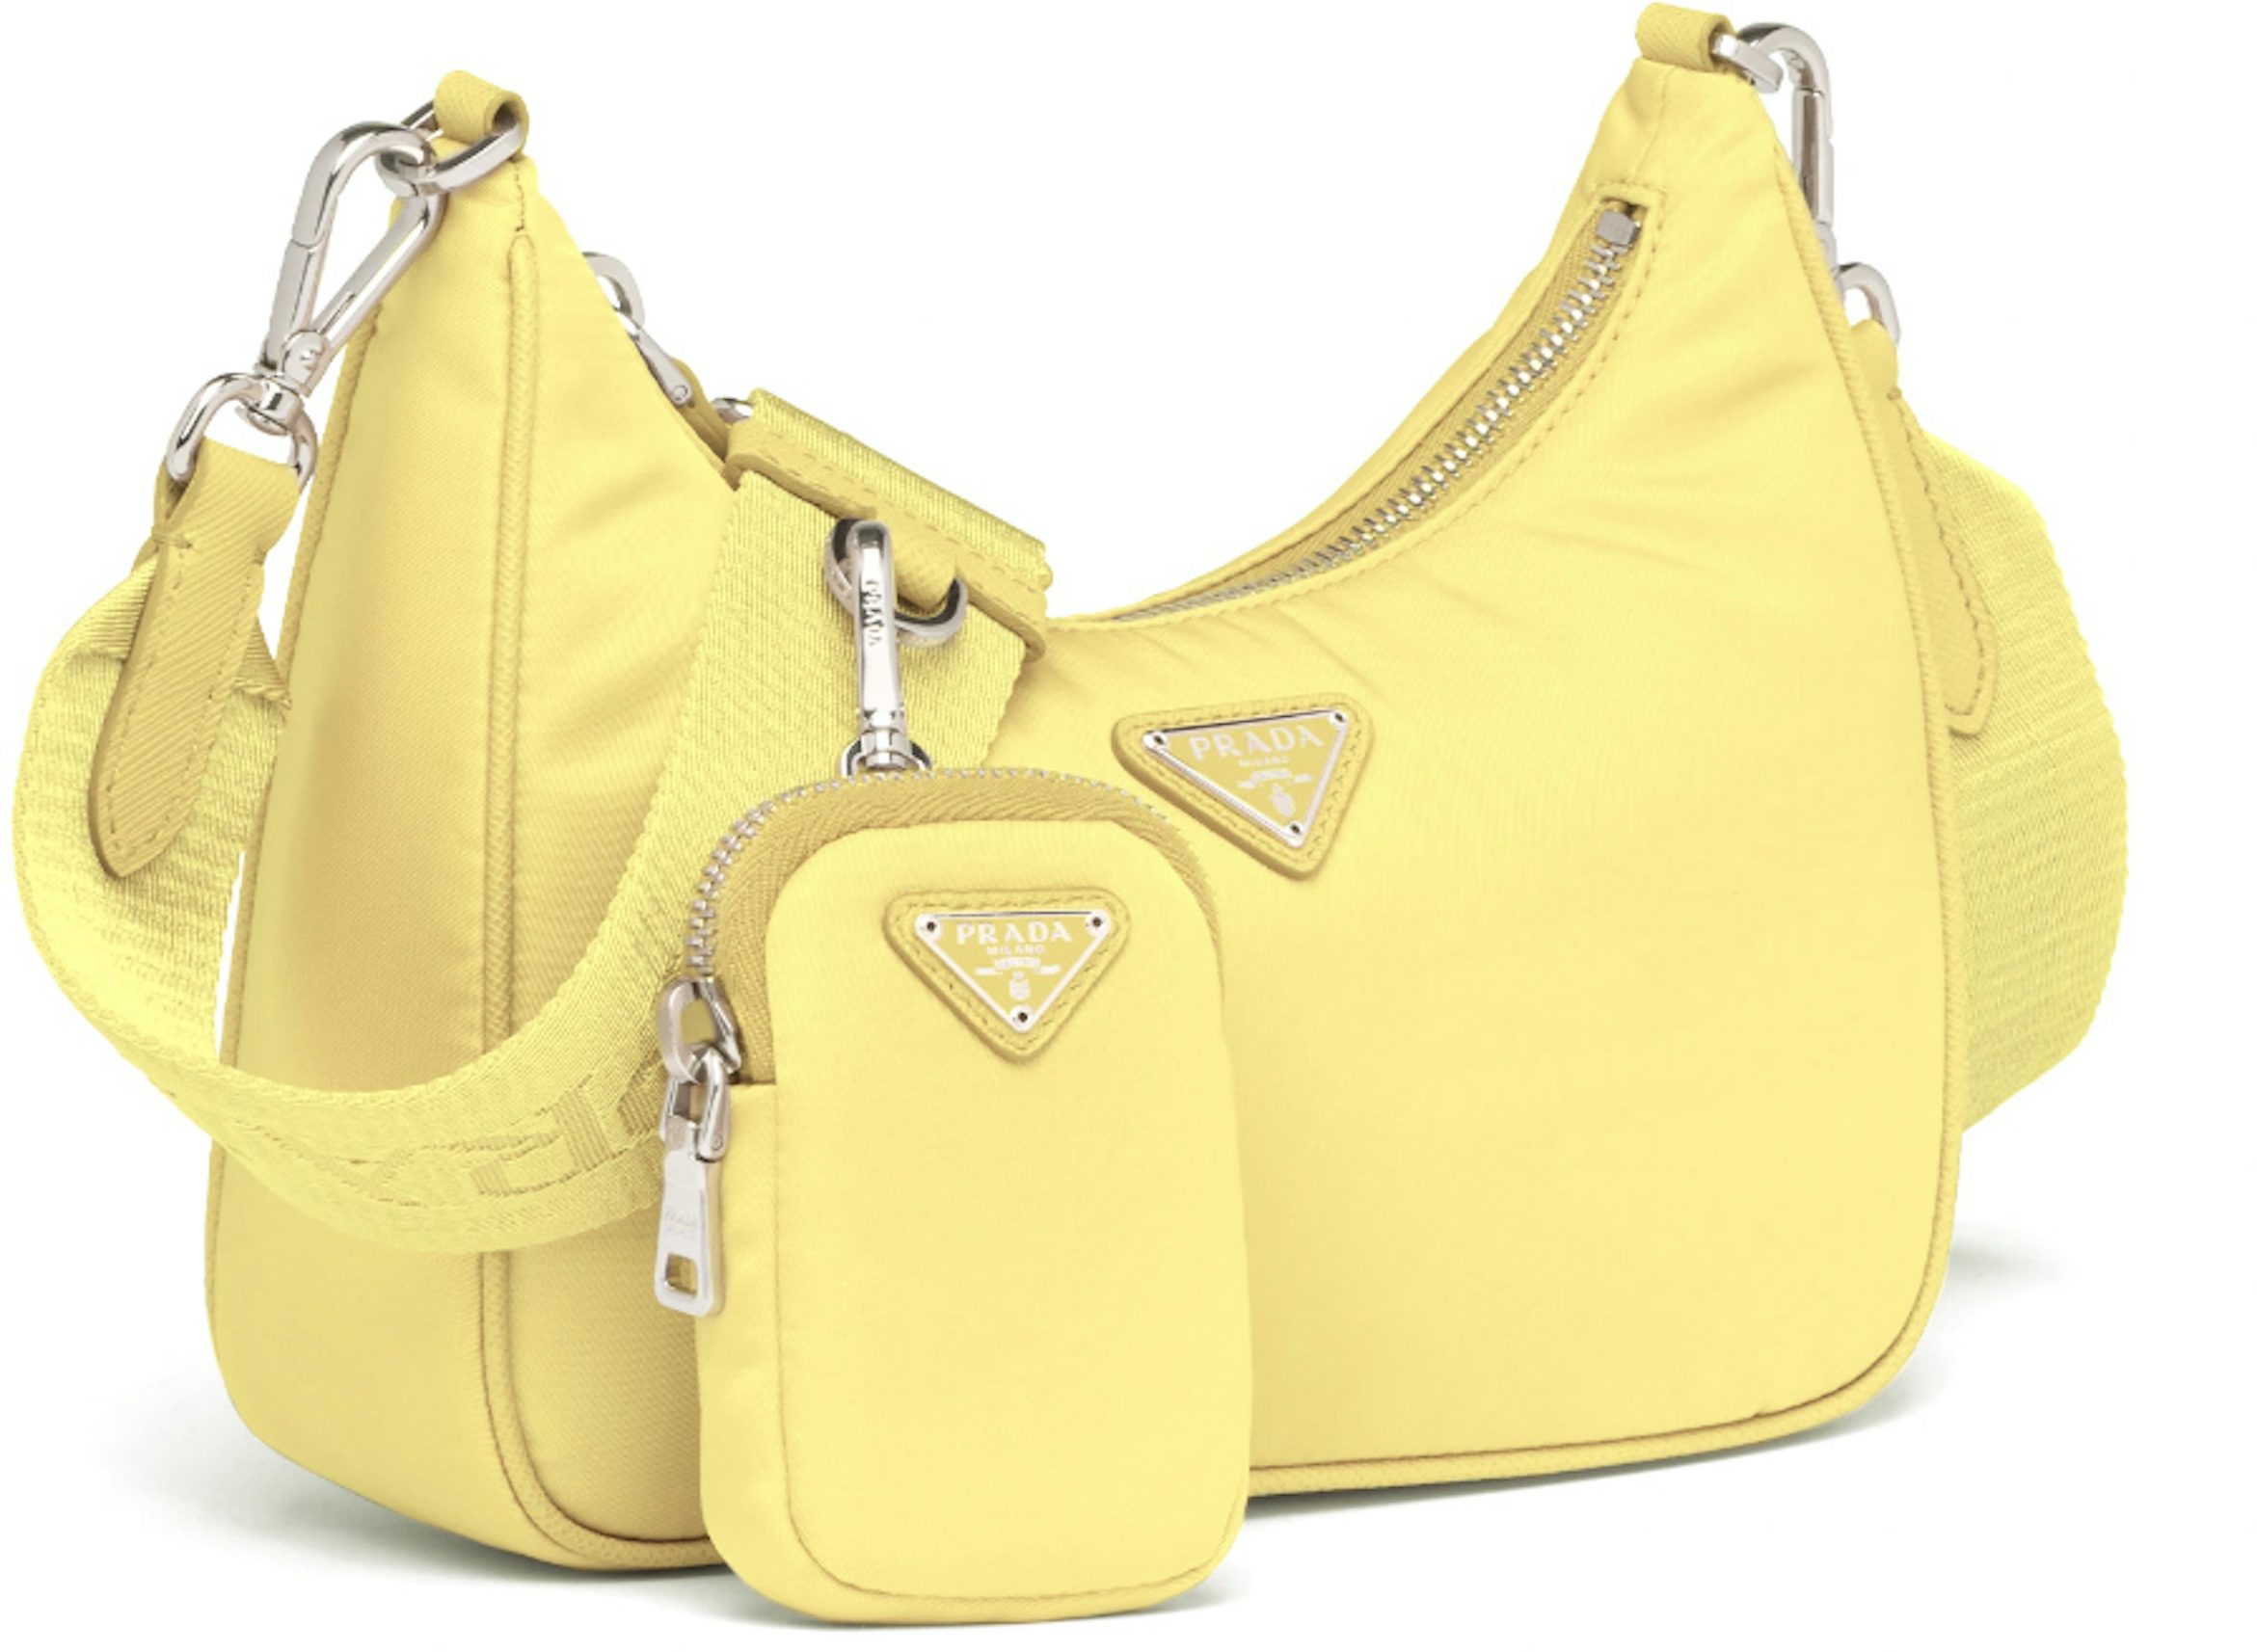 Gold Re-Edition 2006 satin shoulder bag, Prada